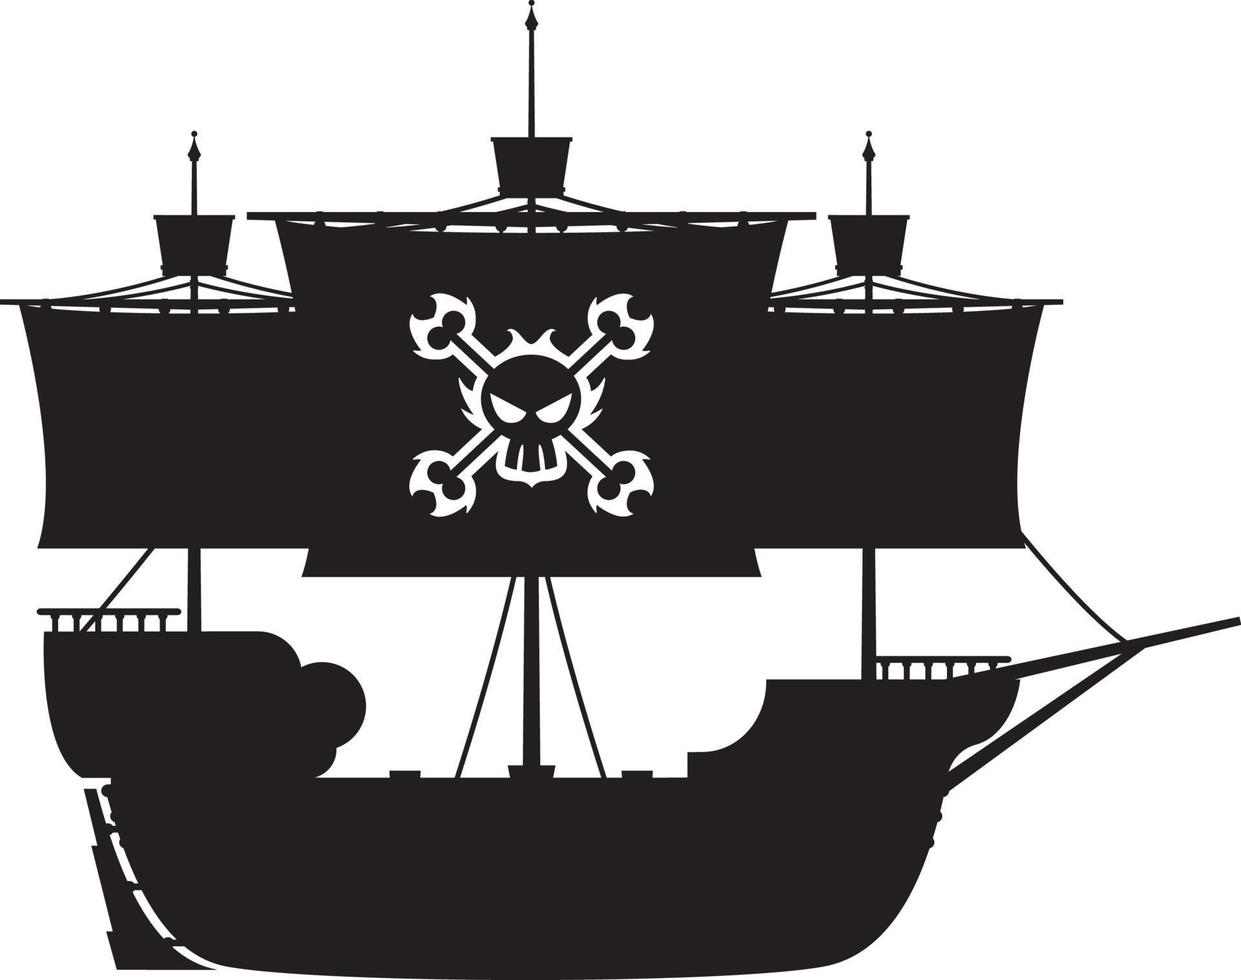 piraat schip in silhouet met schedel en gekruiste beenderen vector